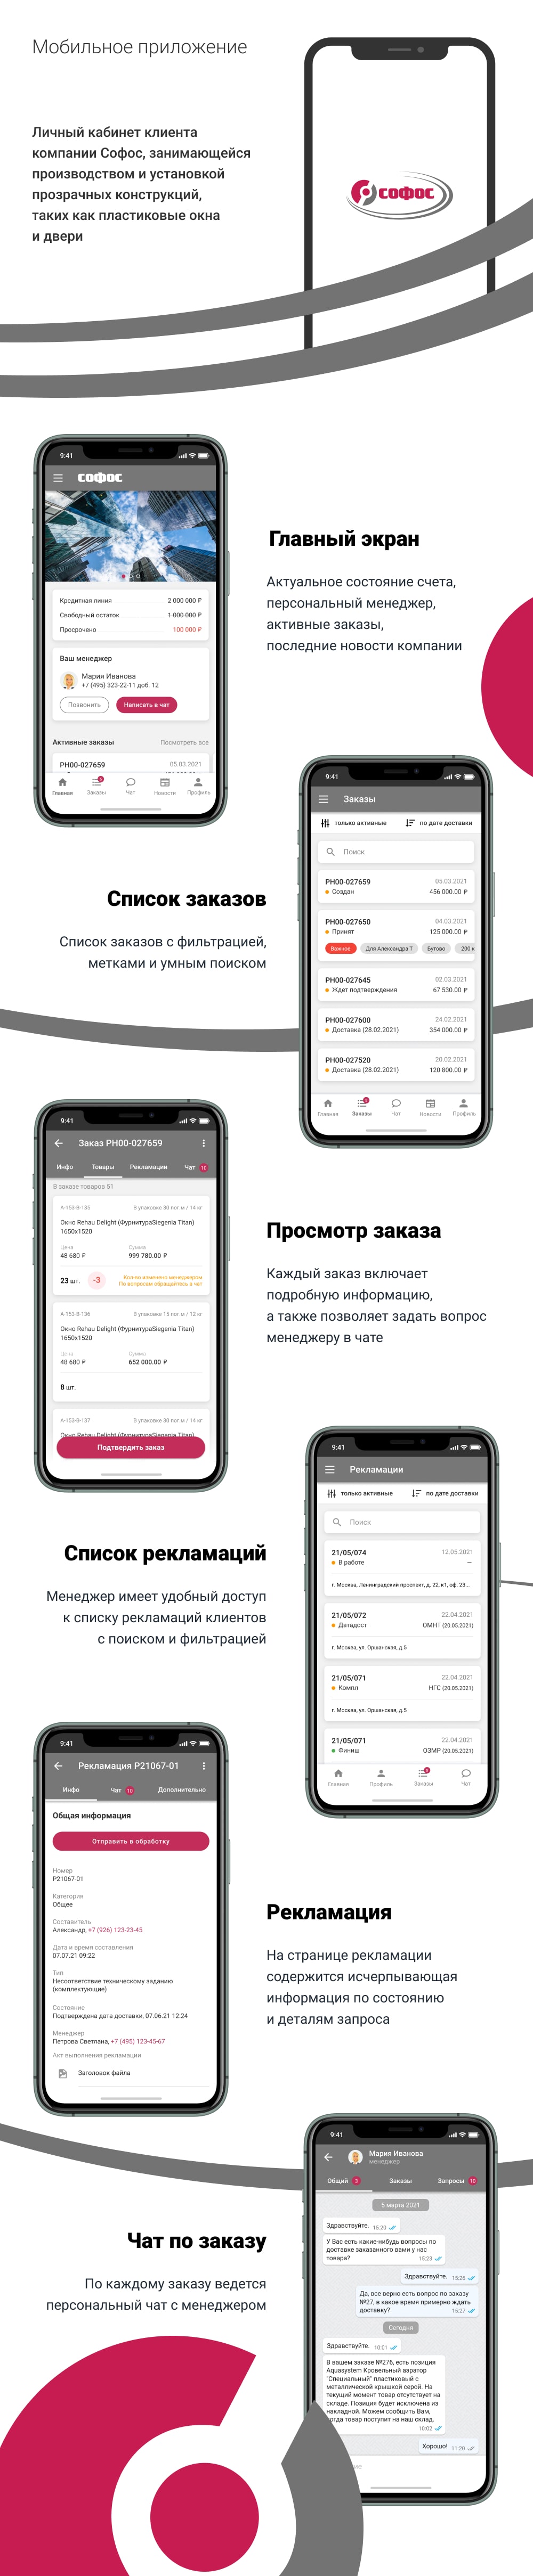 Мобильное приложение дилера компании Софос